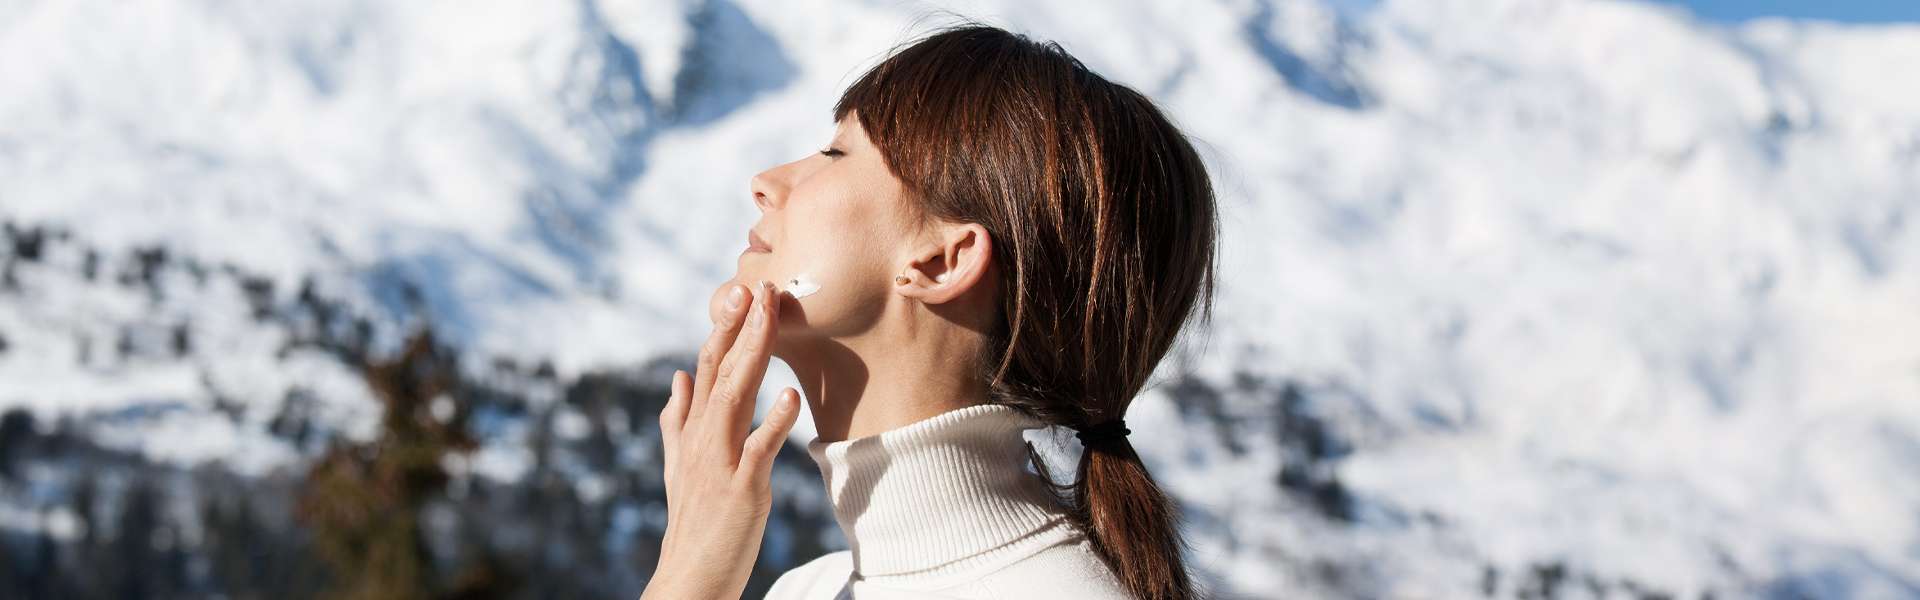 Proteggere la pelle dal rigore invernale: cosmesi e alimentazione